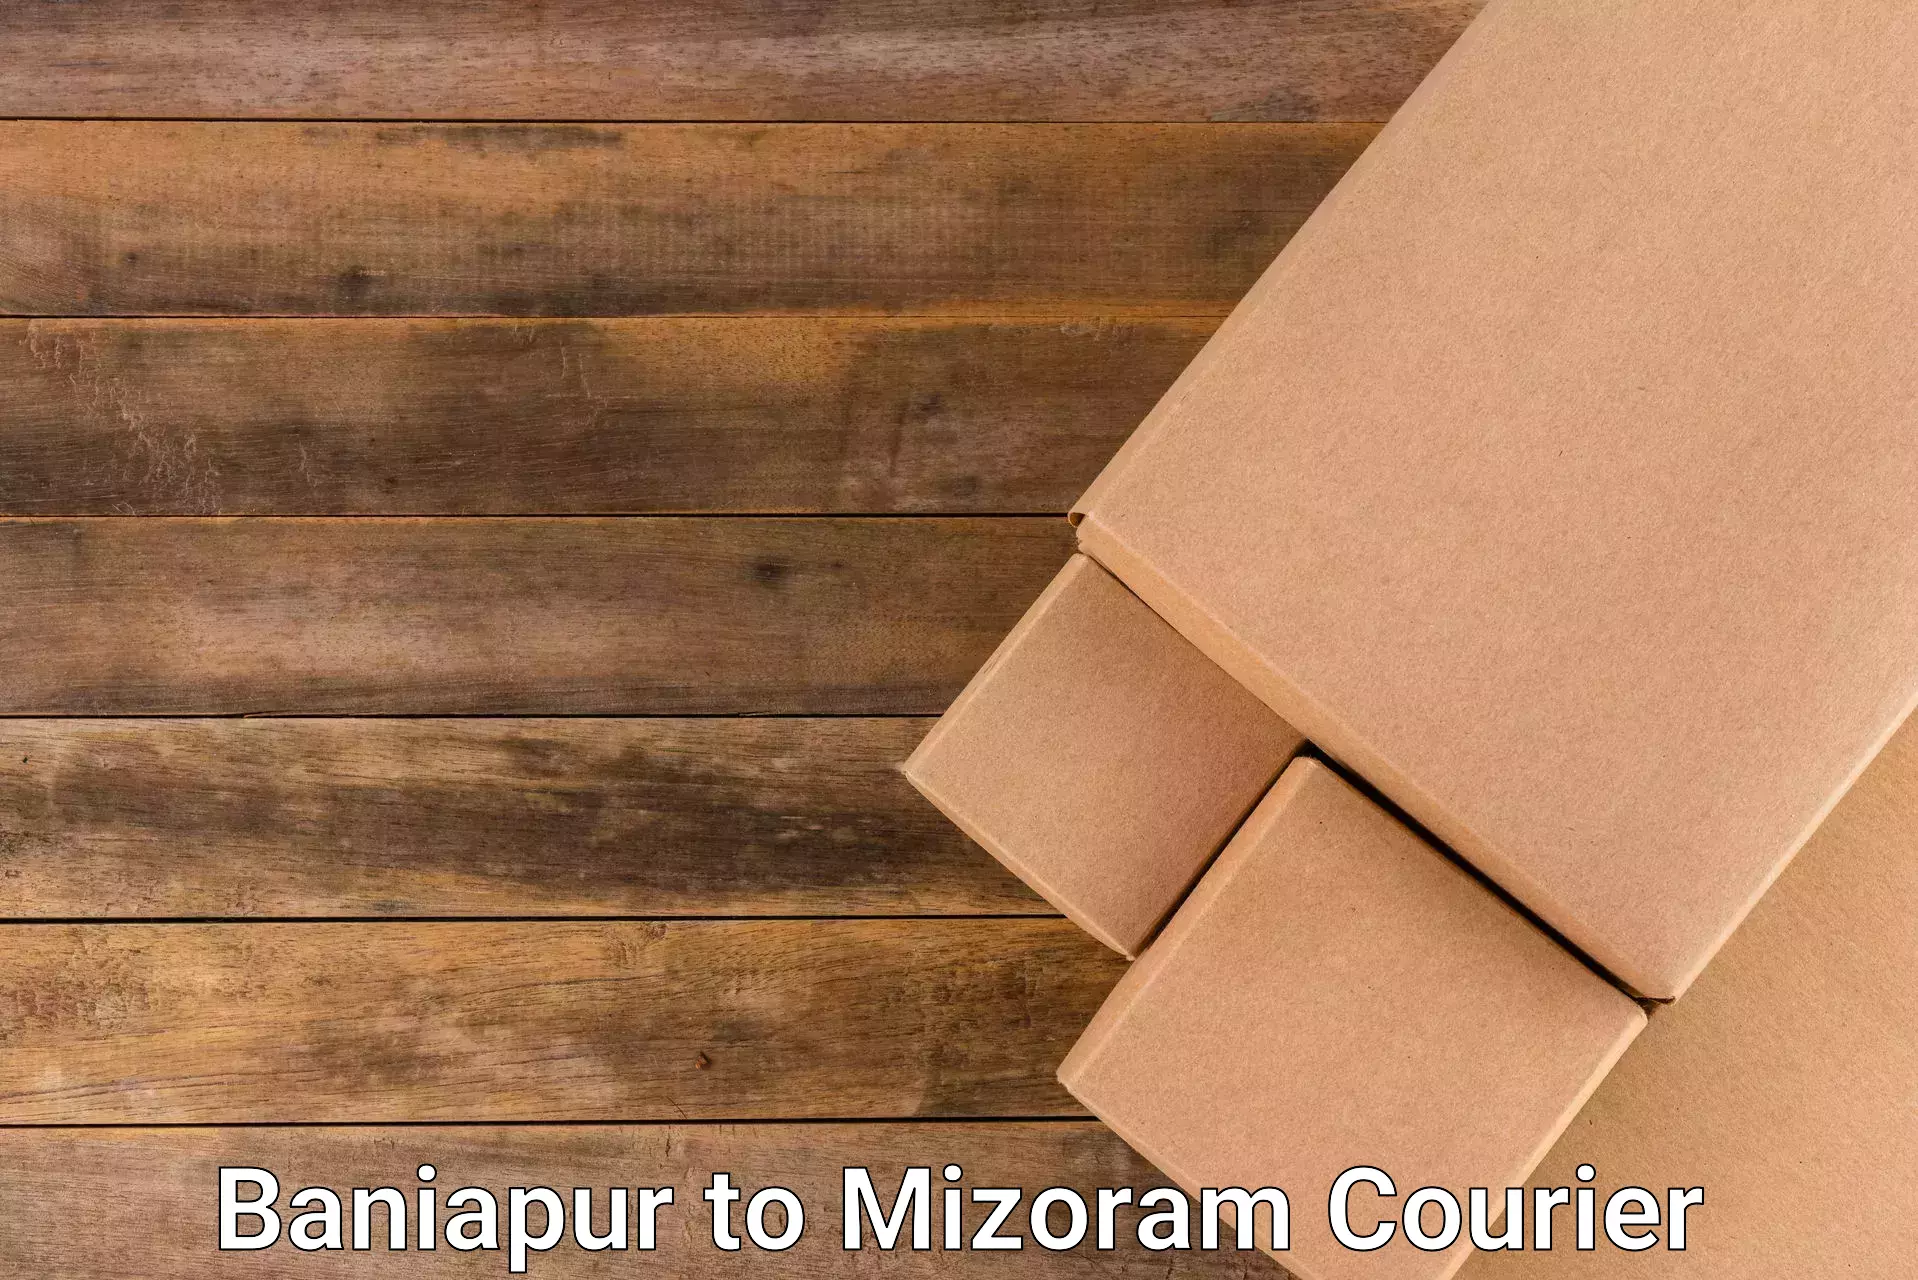 Efficient parcel service Baniapur to Mizoram